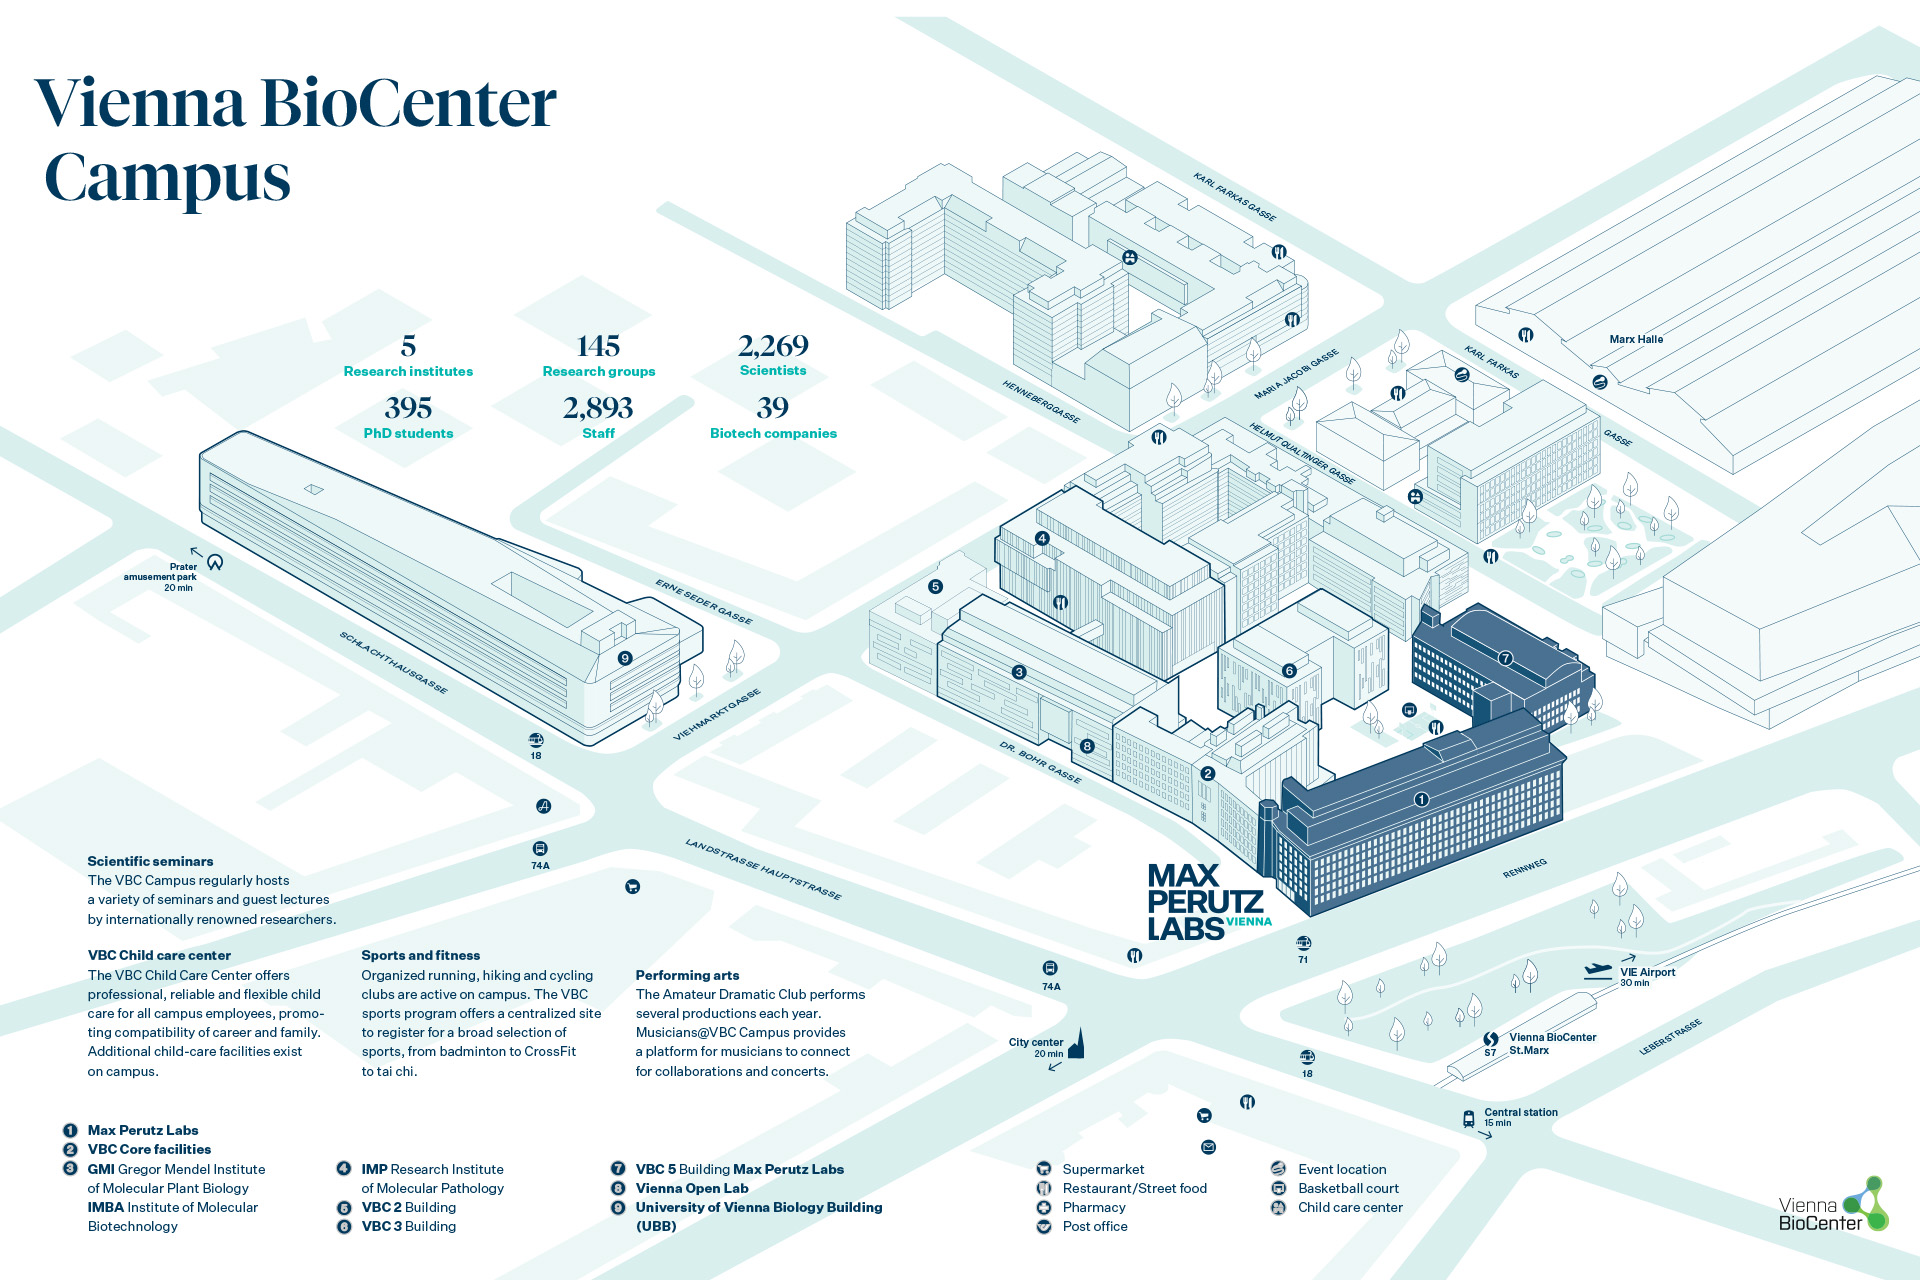 Lageplan der Max Perutz Labs im Biocenter in blau und weiß zur Orientierung, mit eingebauten Informationen über die Institution